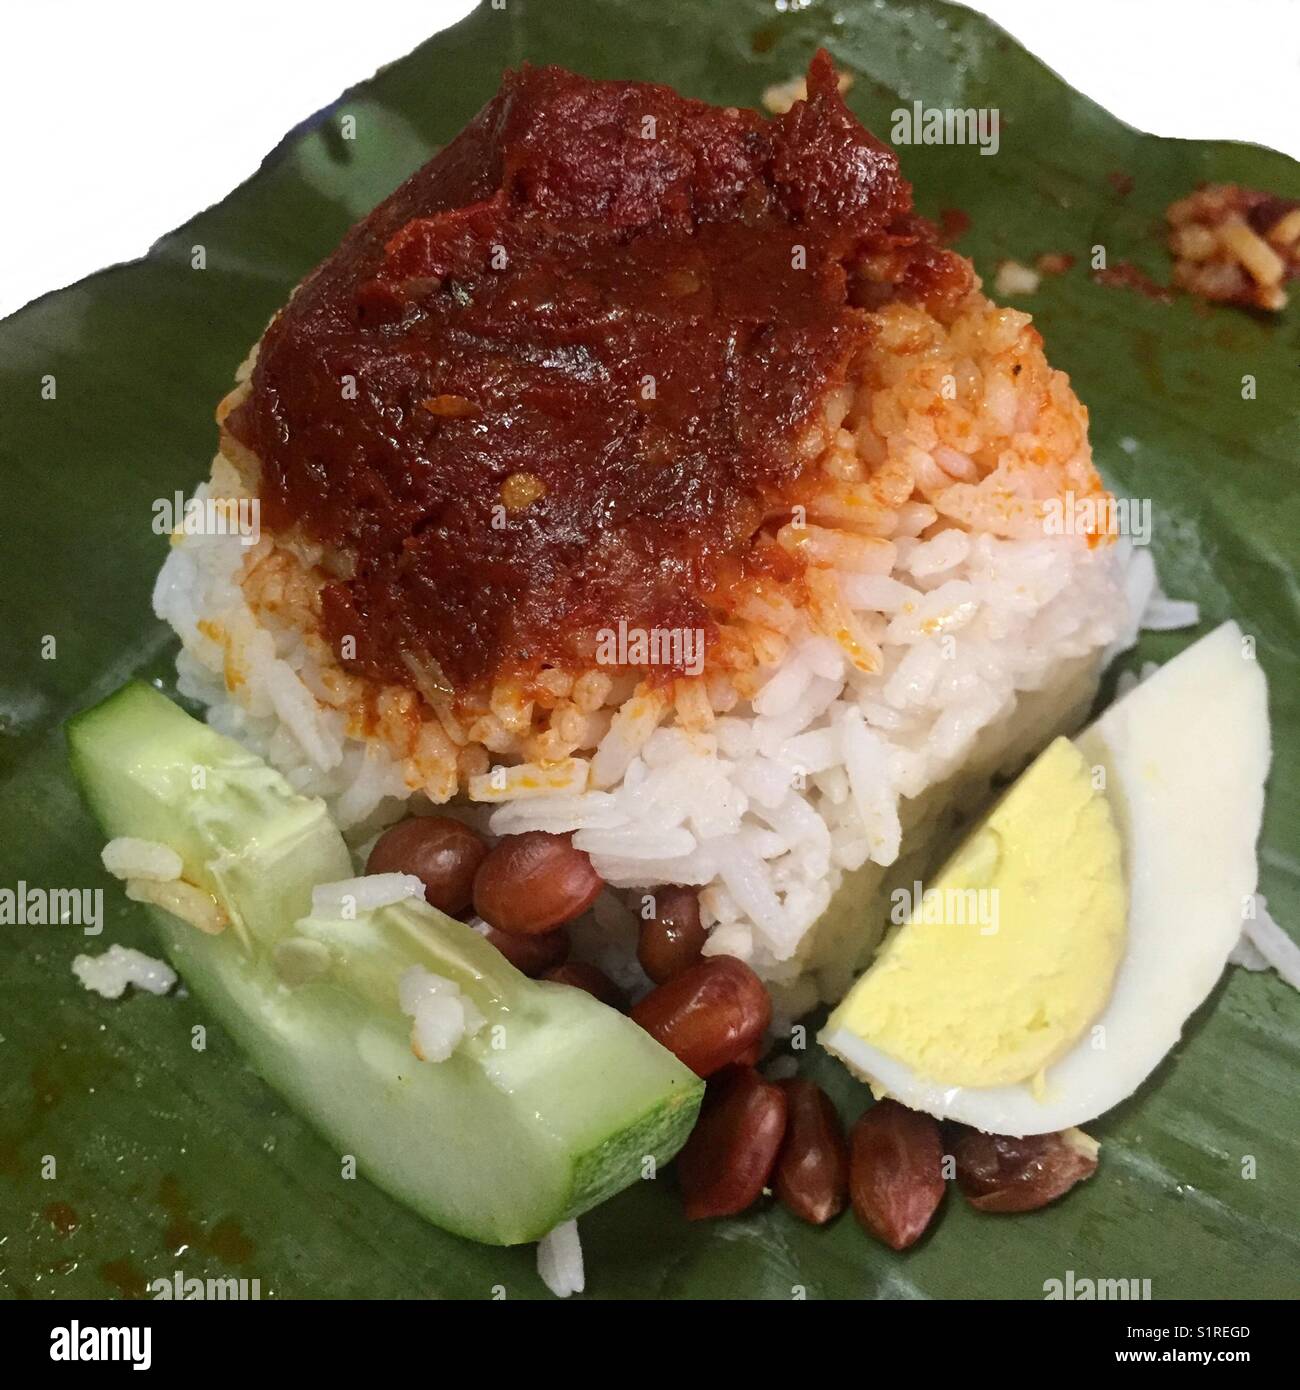 Malaysia Signatur Frühstück; Reis mit Kokosmilch gekocht, würzige Soße auf der Oberseite, Ei, Gurke und Erdnüsse auf einem Bananenblatt Stockfoto